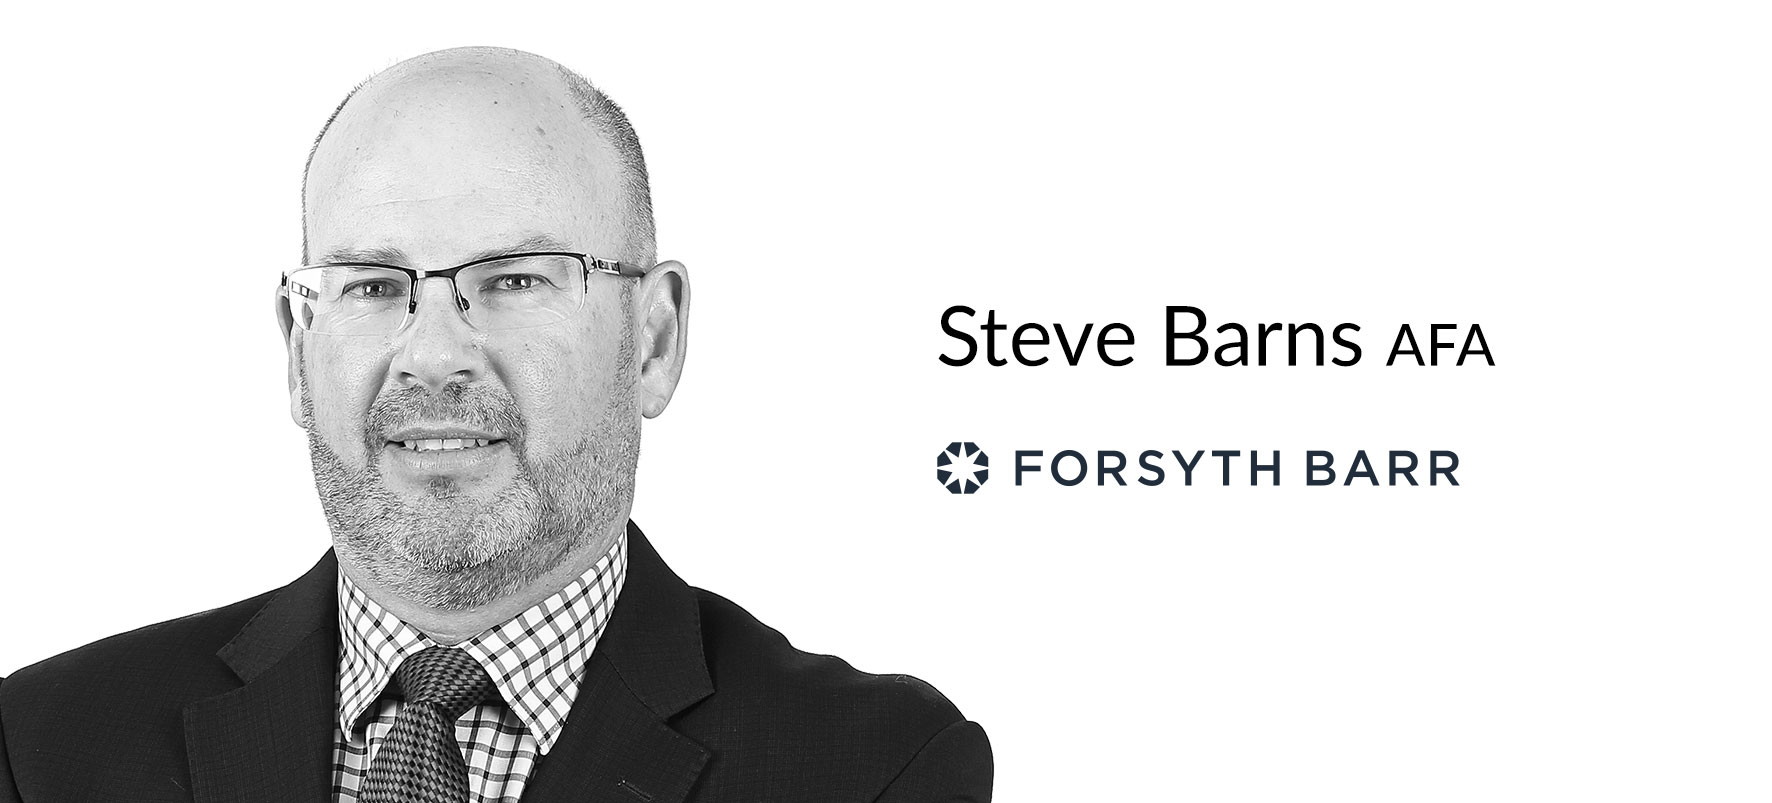 Forsyth Barr introduces Steve Barns